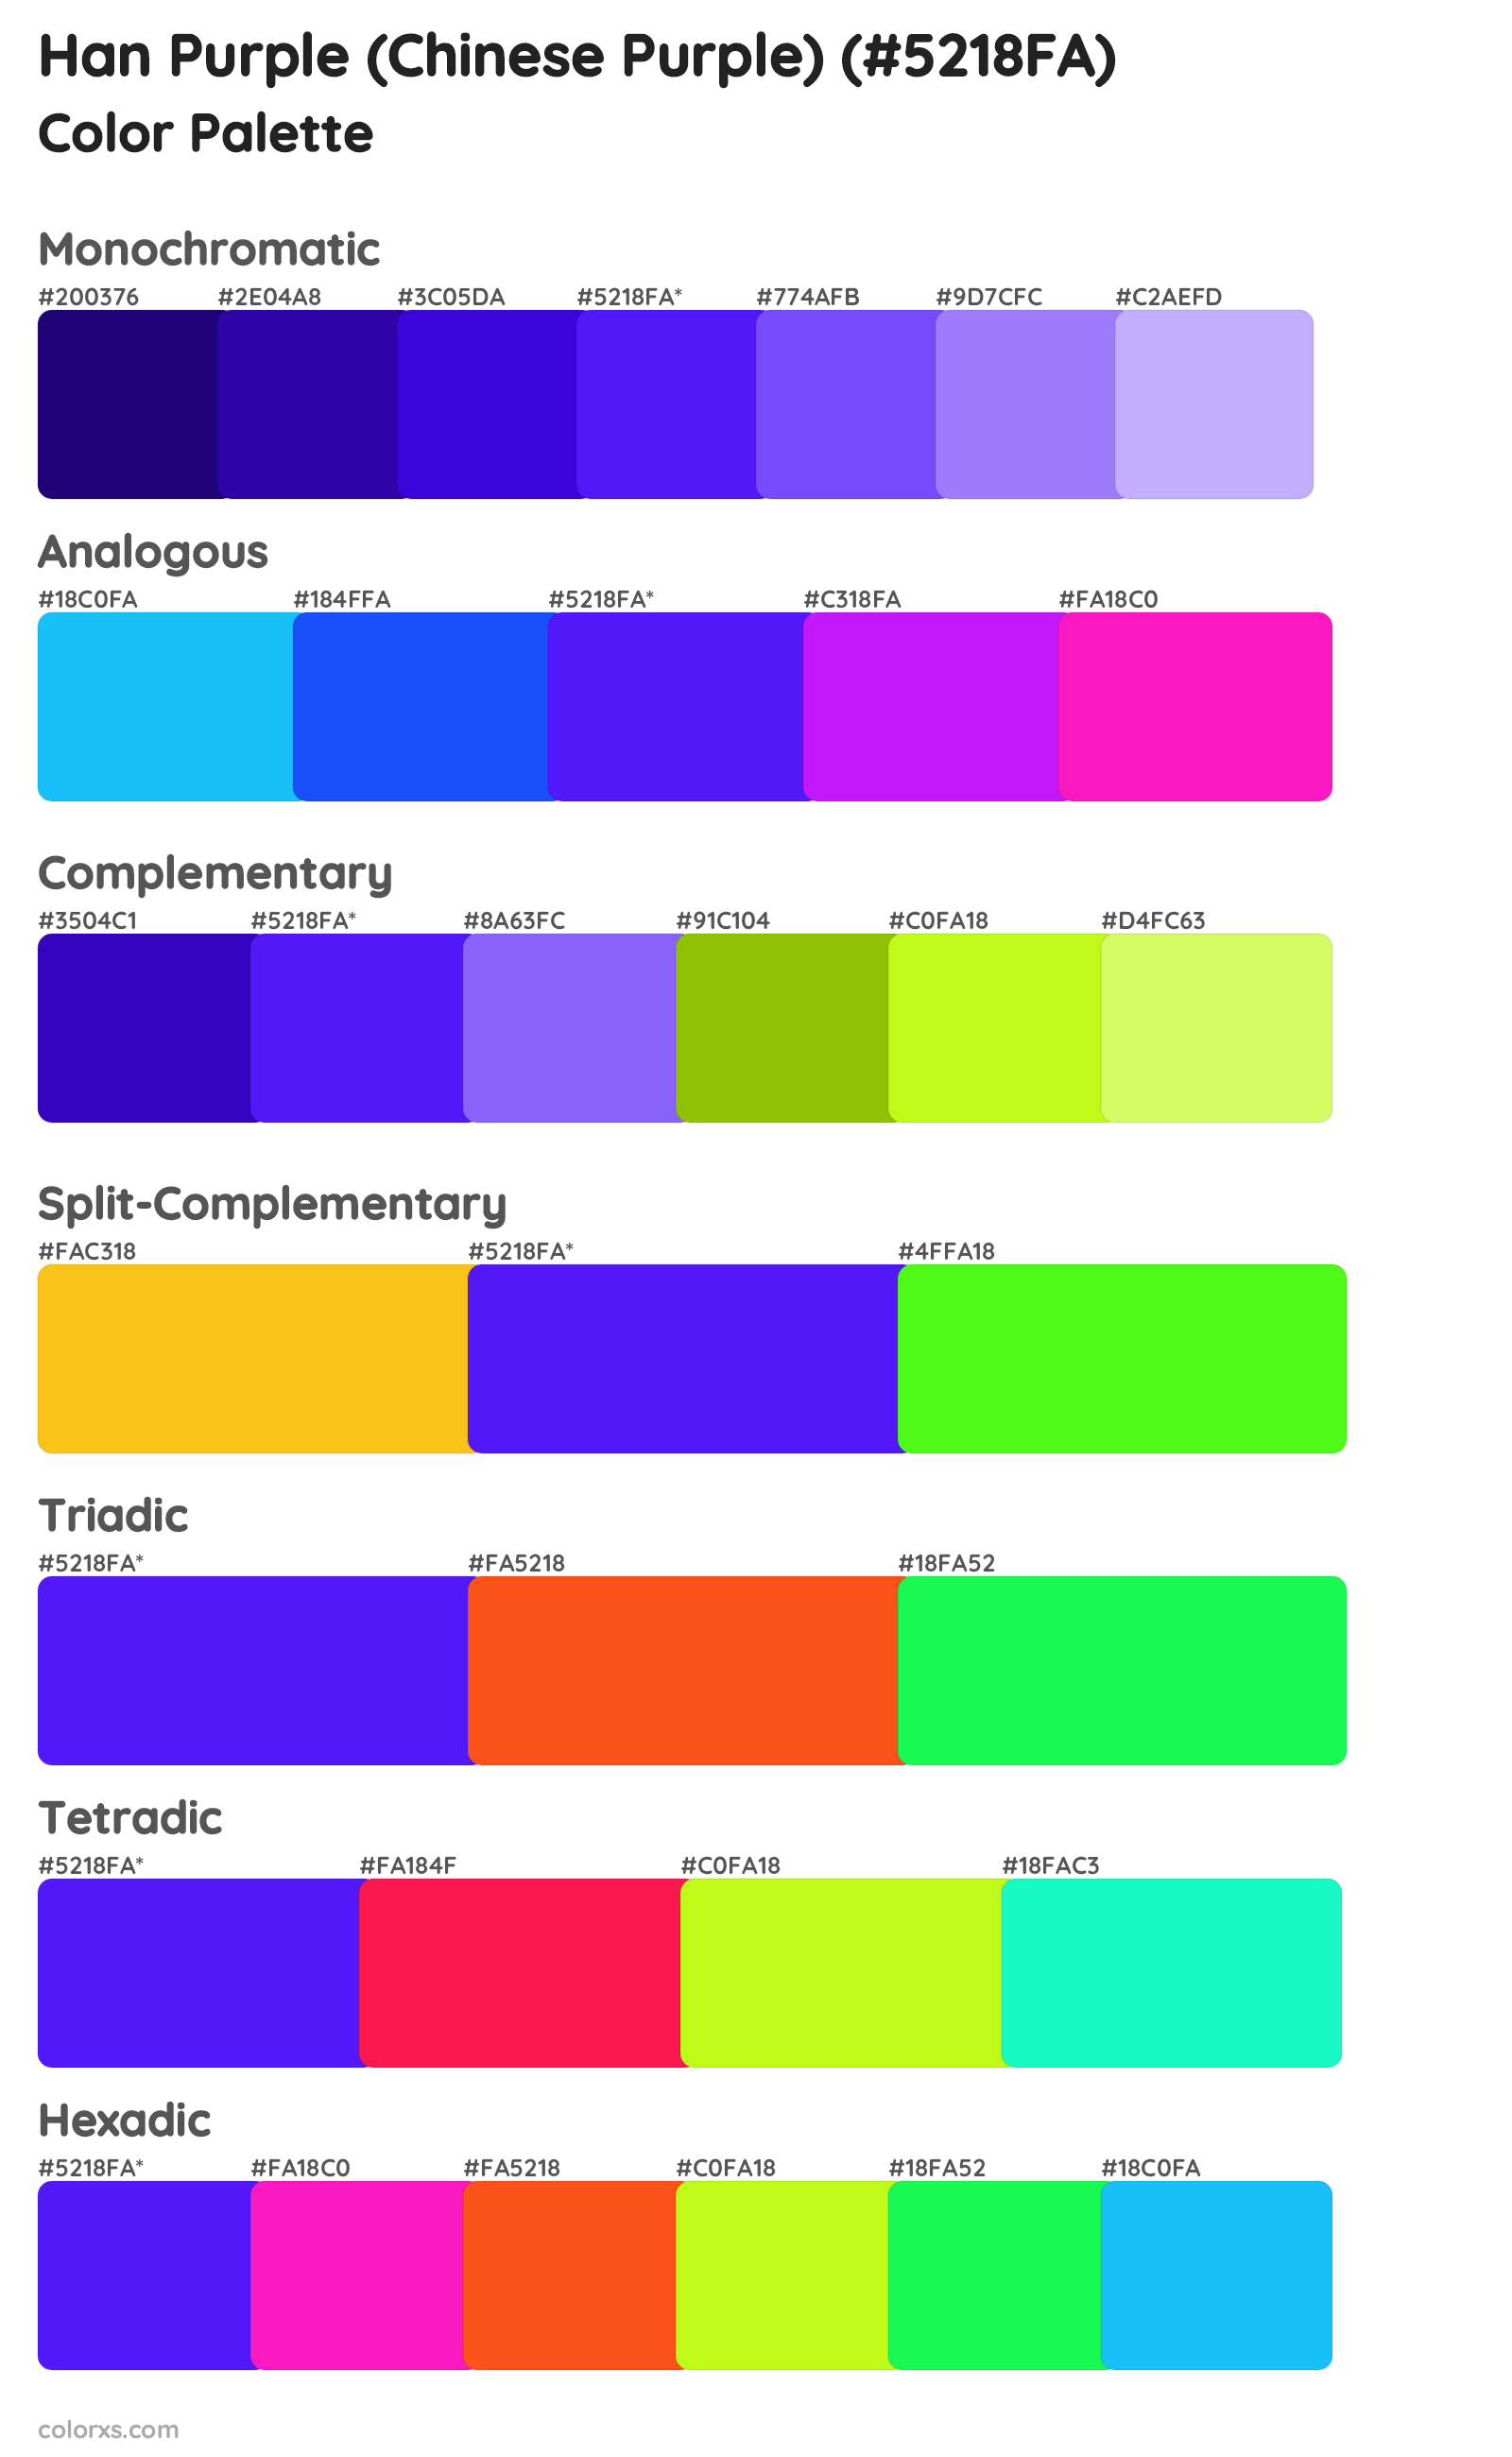 Han Purple (Chinese Purple) Color Scheme Palettes